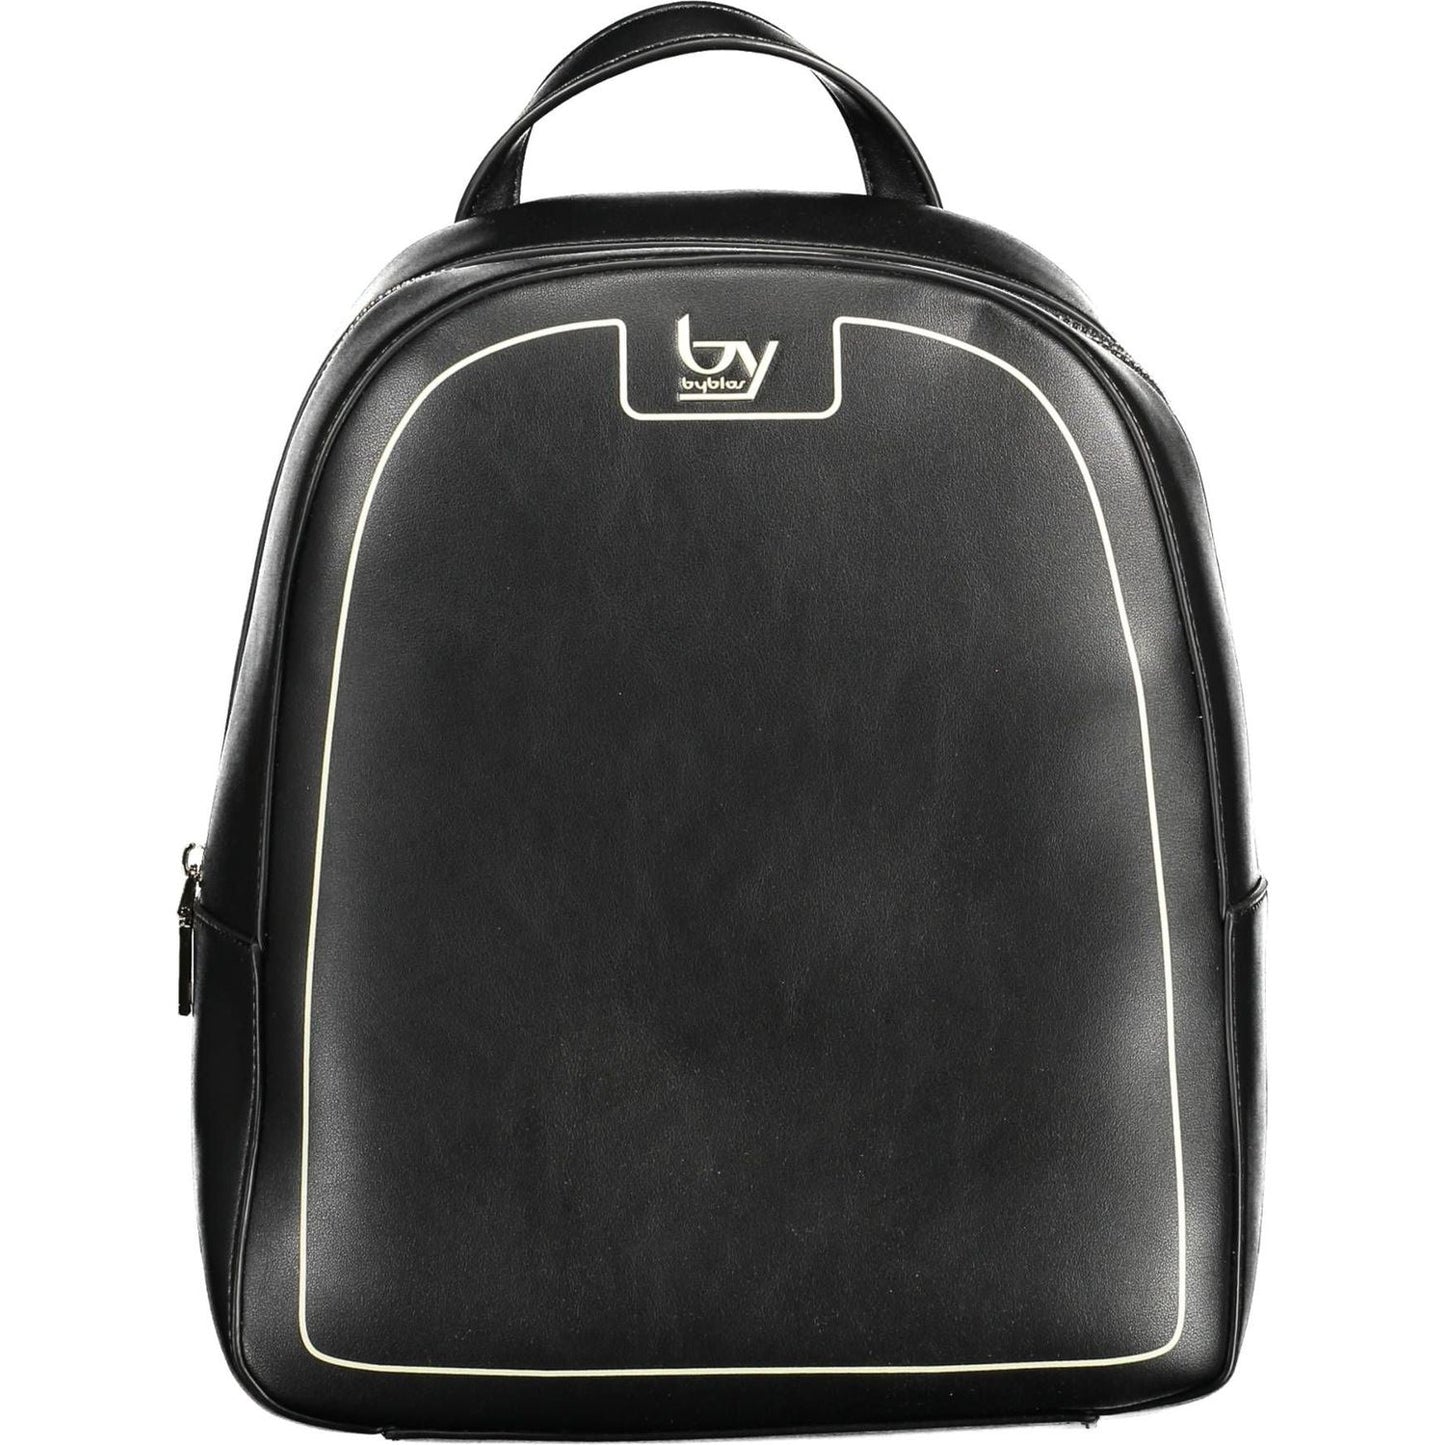 BYBLOS Elegant Black Backpack with Contrasting Details elegant-black-backpack-with-contrasting-details